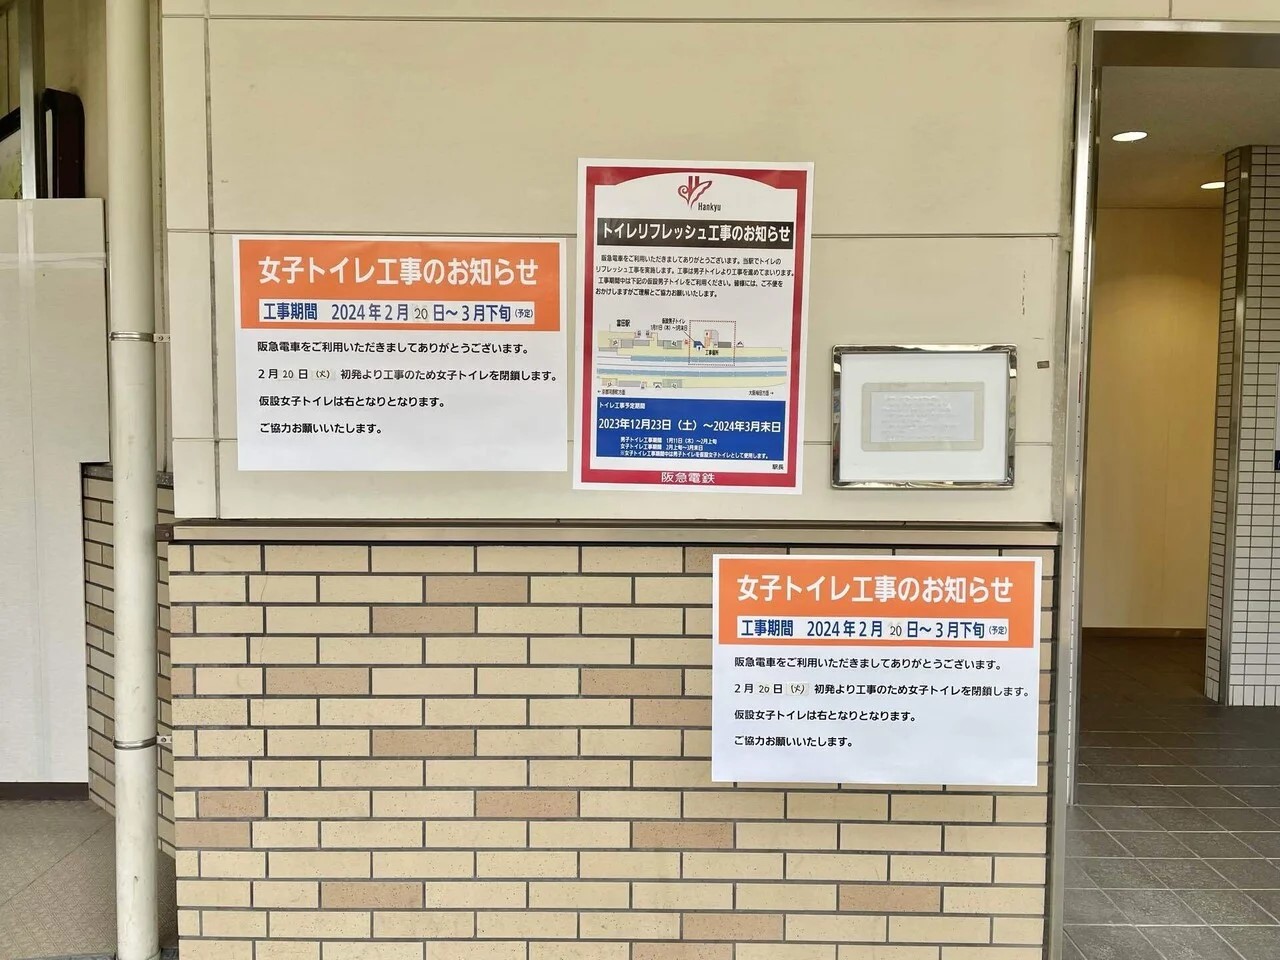 阪急富田駅構内仮設トイレのお知らせ